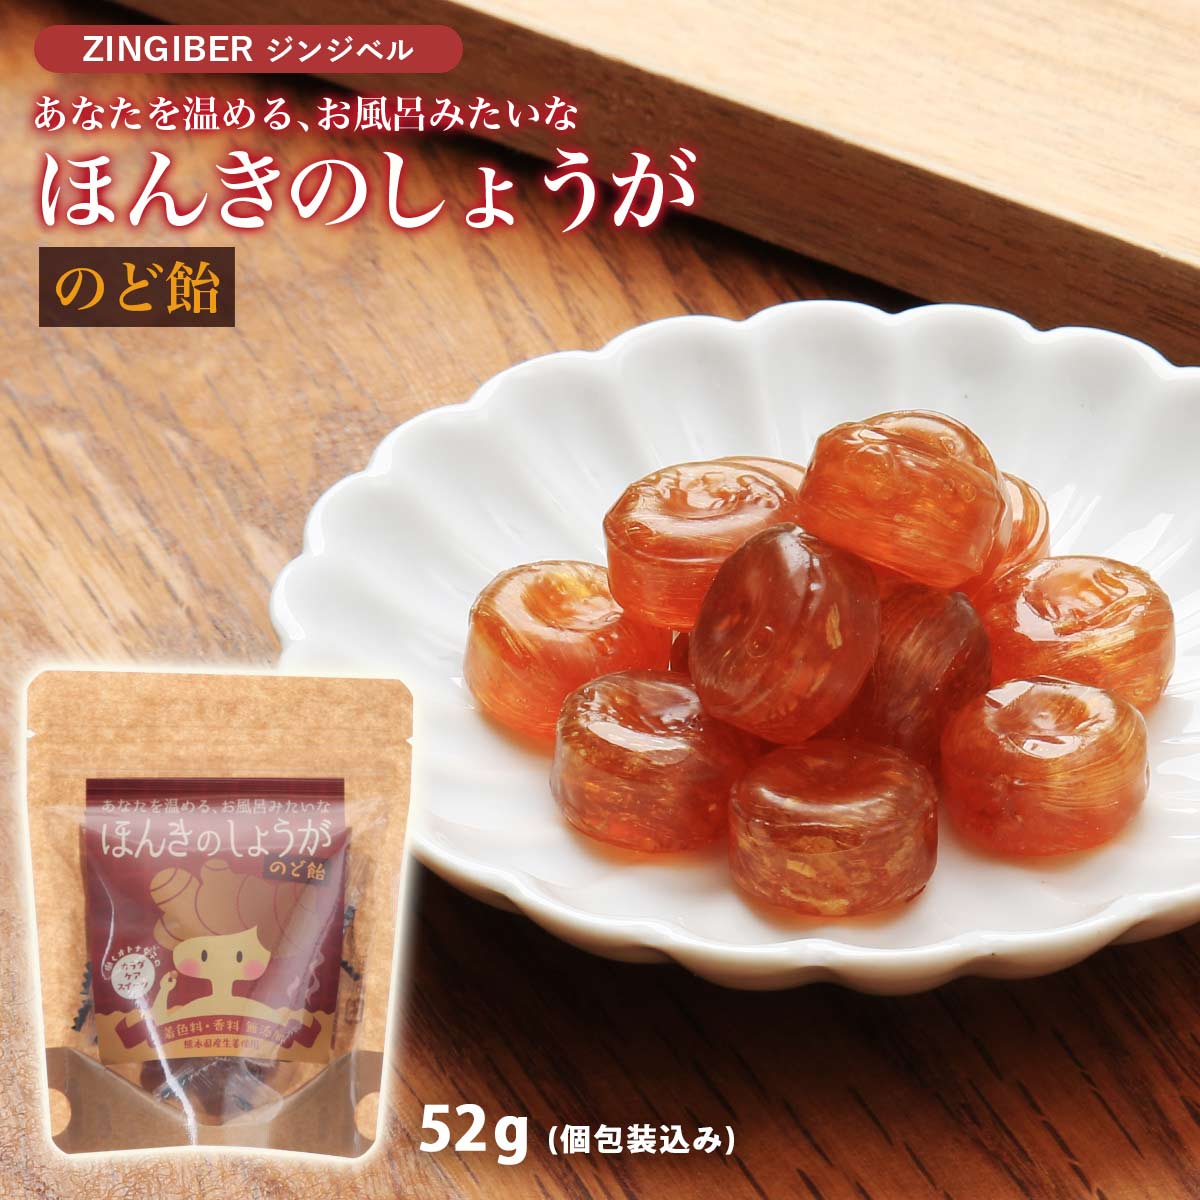 [ジンジベル] 菓子 ほんきのしょうがのど飴 52g(個包装込み) /あめ/のど飴/ショウガ/生姜/しょうがのど飴/熊本県/黒糖/水飴/しょうが糖